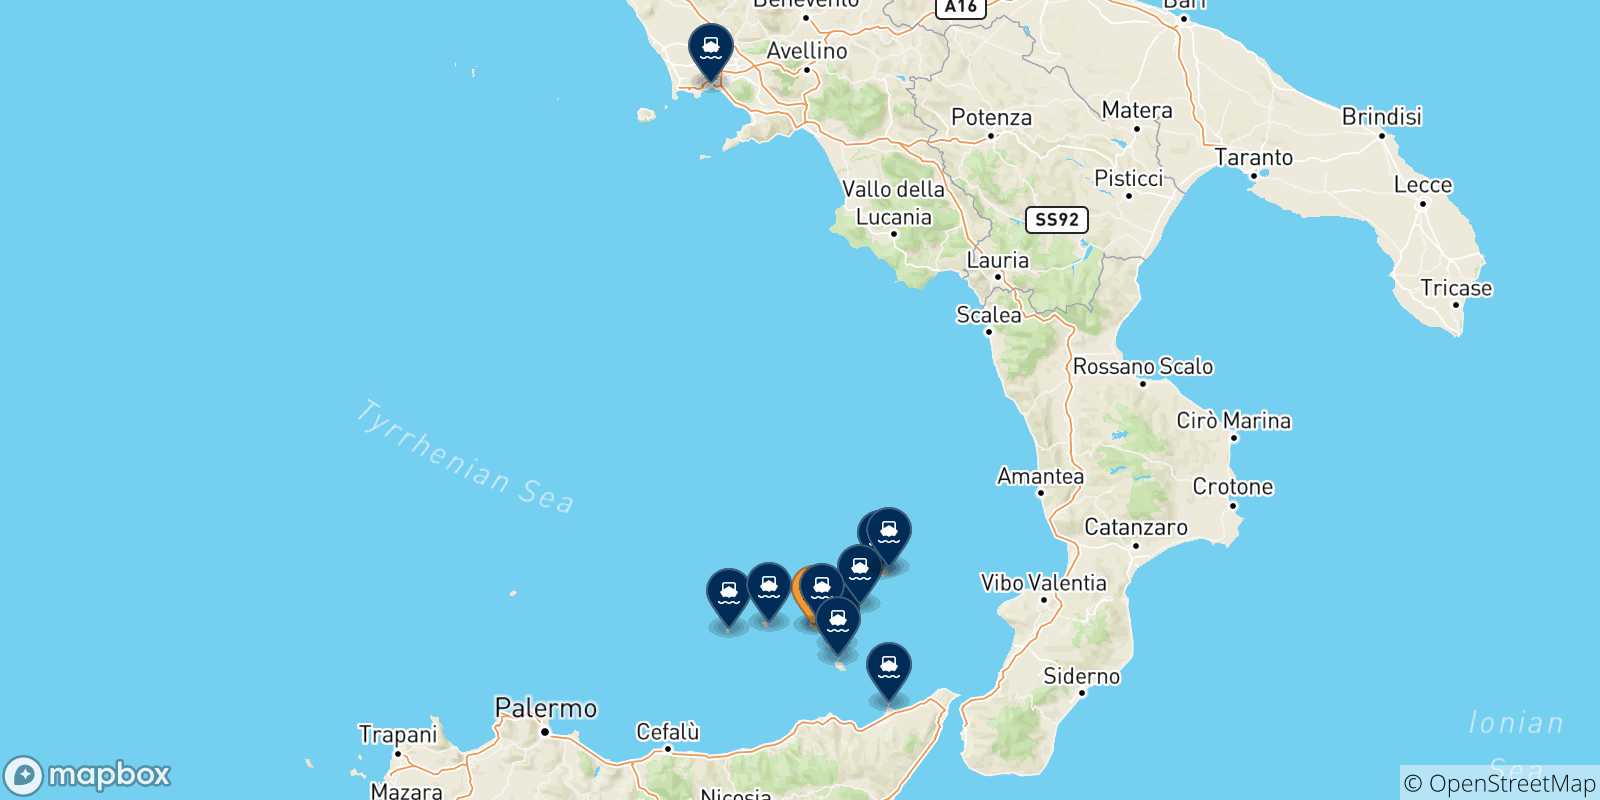 Mappa delle possibili rotte tra Rinella (Salina) e l'Italia